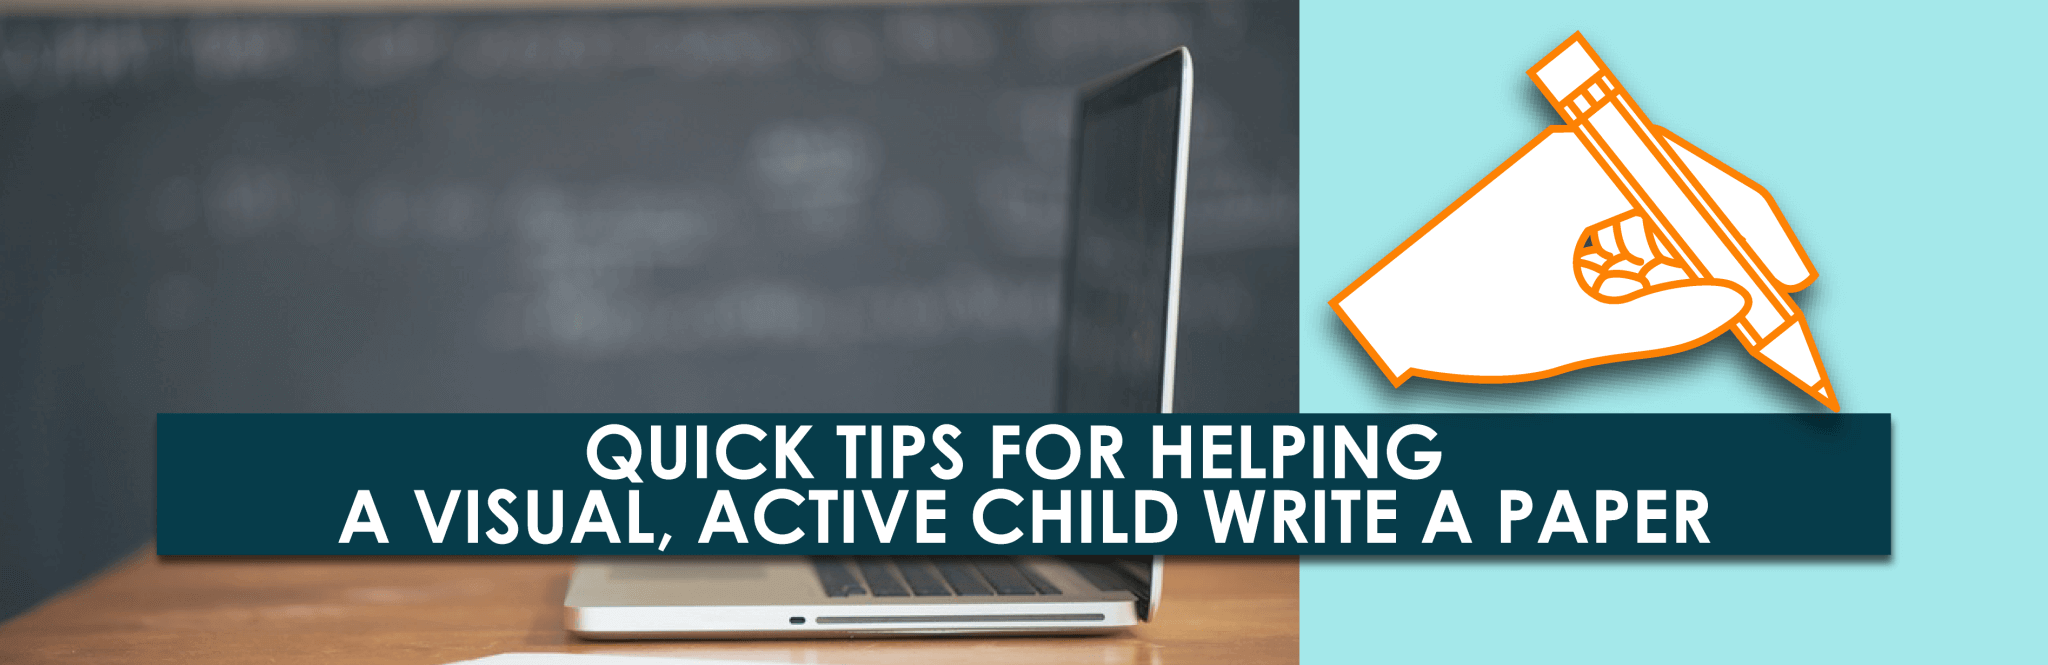 Consejos rápidos para ayudar a un niño visual y activo a escribir un artículo